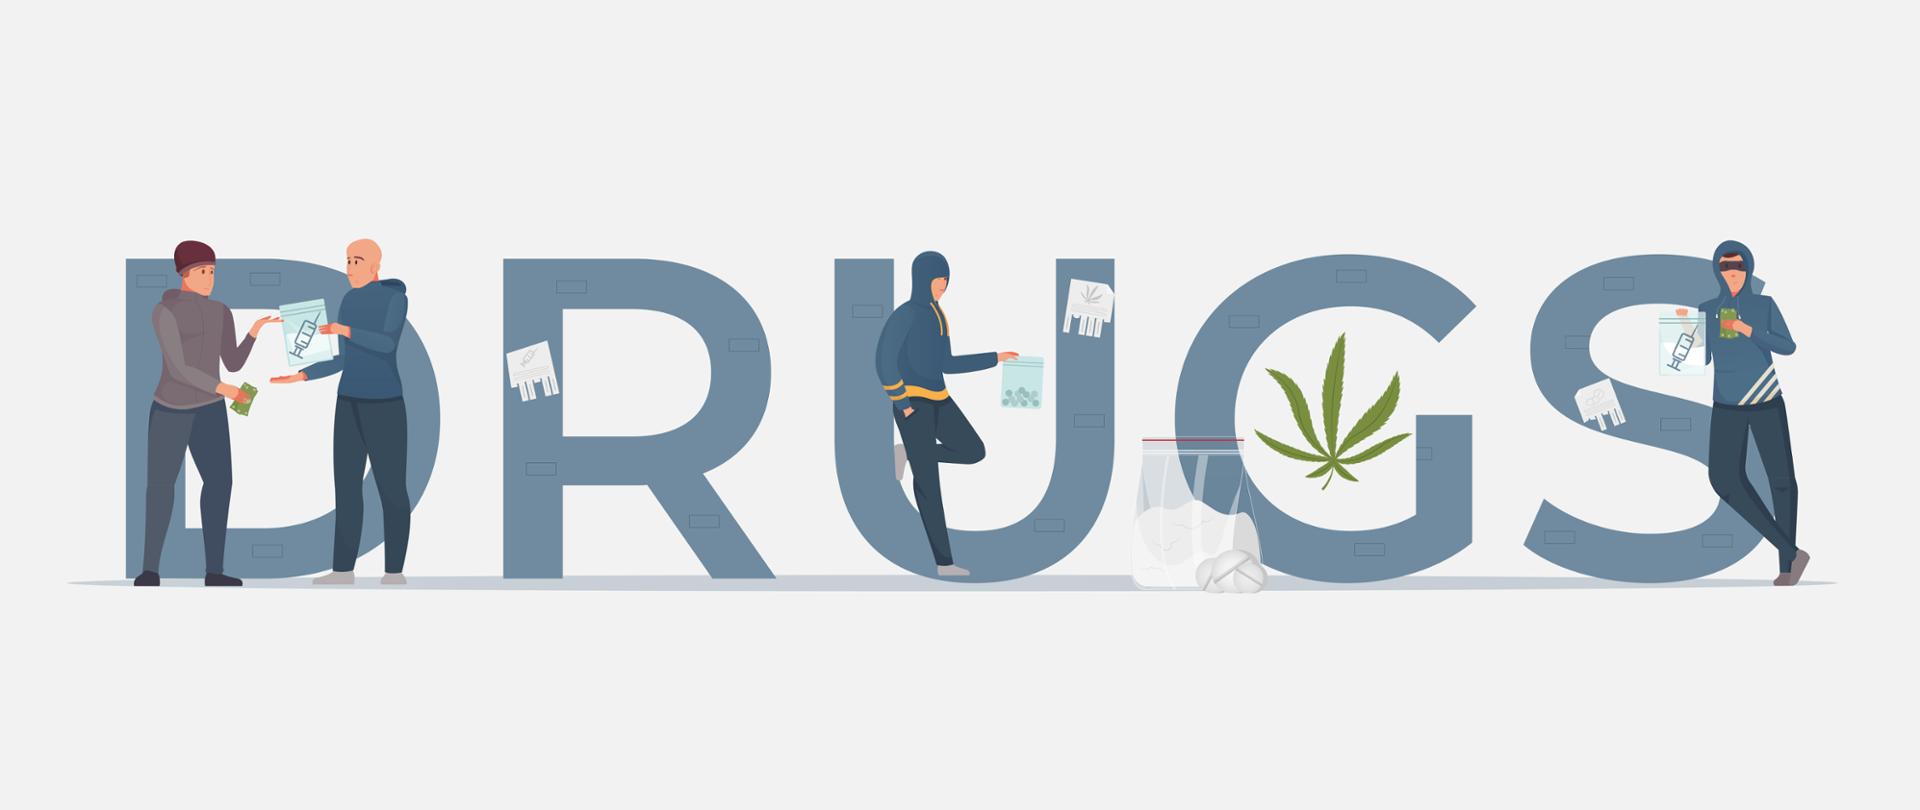 Na tle dużego napisu DRUGS stoją cztery postaci. Dwóch mężczyzn w bluzach z kapturem trzyma w ręku woreczki z narkotykami. Jeden mężczyzna w czapce kupuje od drugiego narkotyki. 